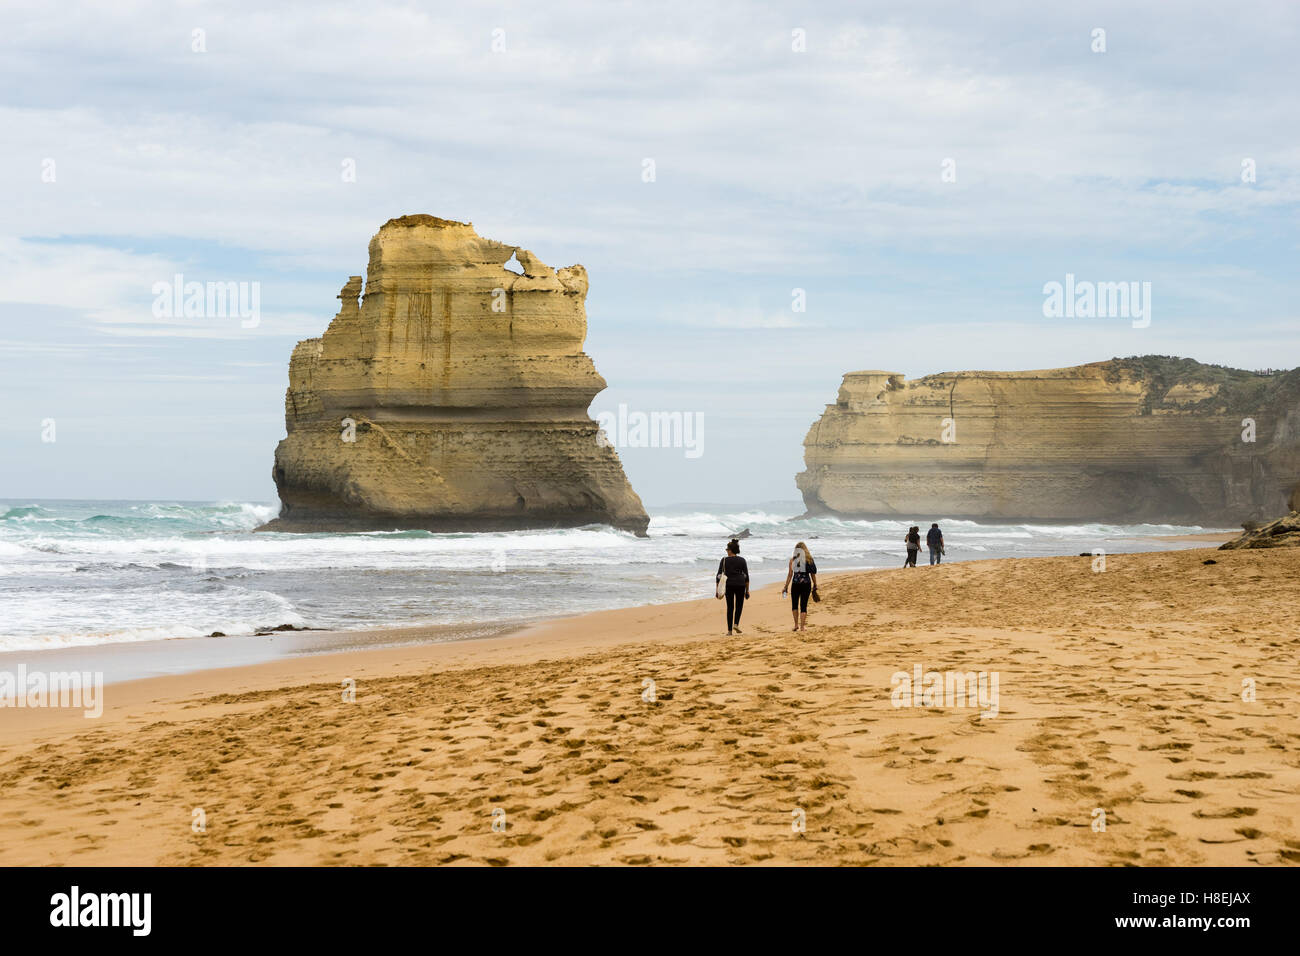 Les gens marchent le long d'une plage avec l'un des Douze Apôtres formation géologique dans l'arrière-plan, Victoria, Australie, Pacifique Banque D'Images